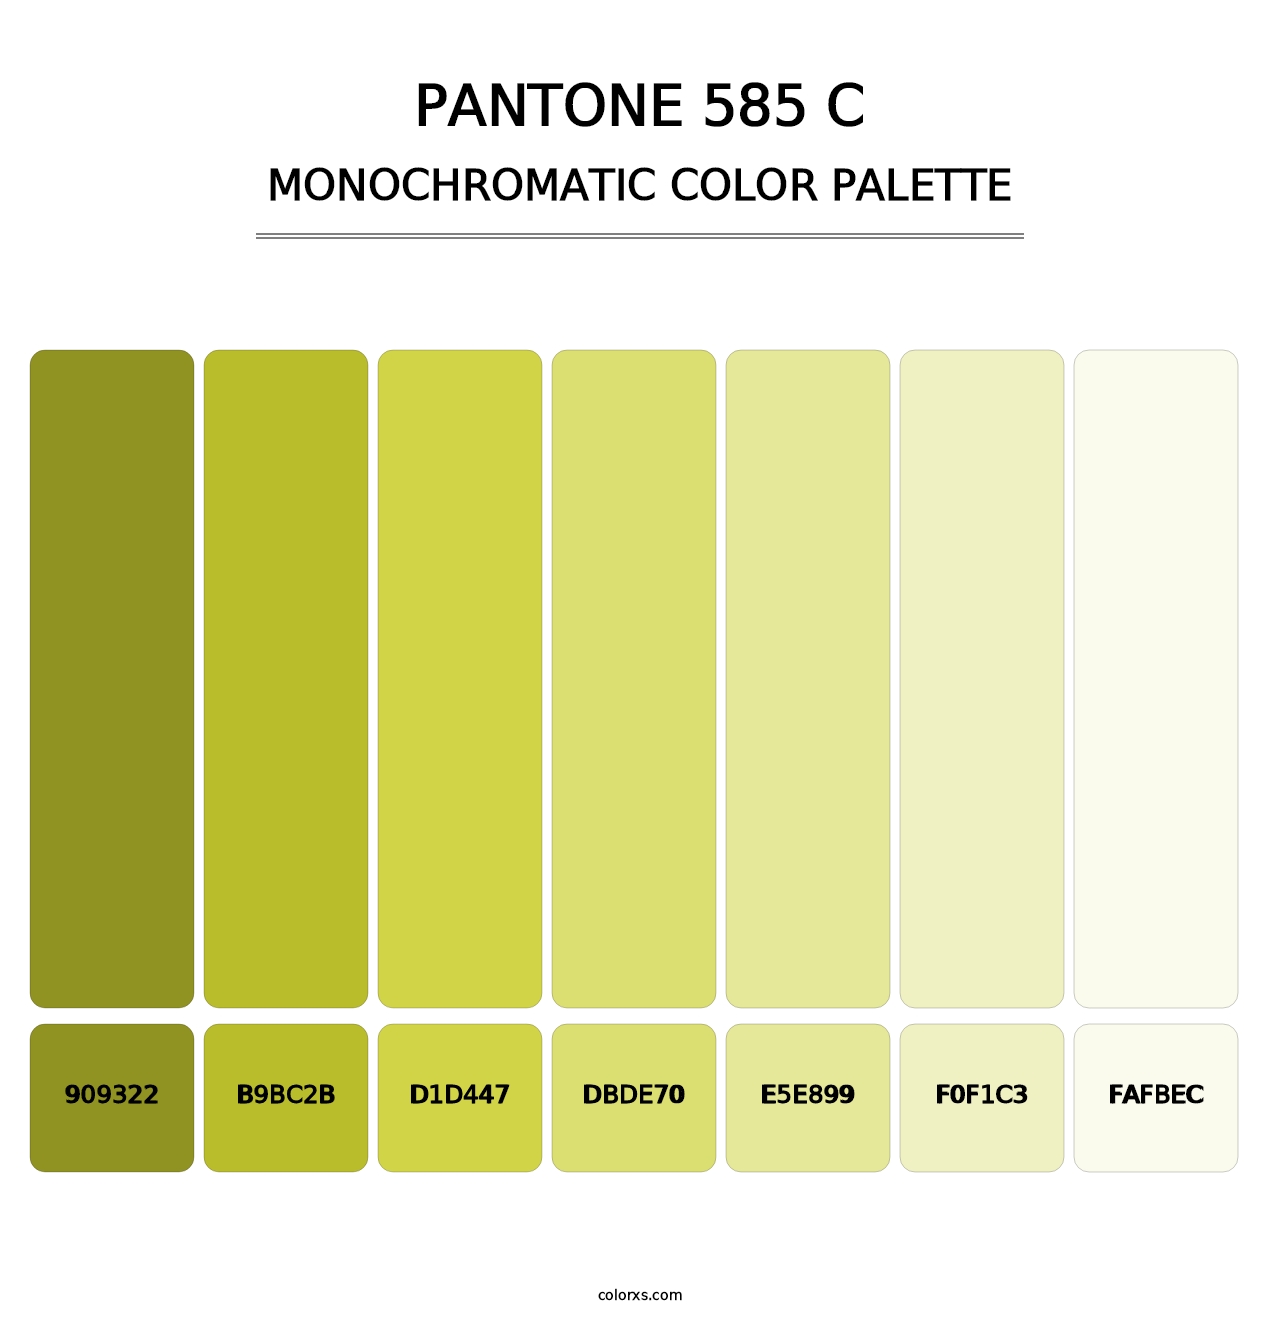 PANTONE 585 C - Monochromatic Color Palette